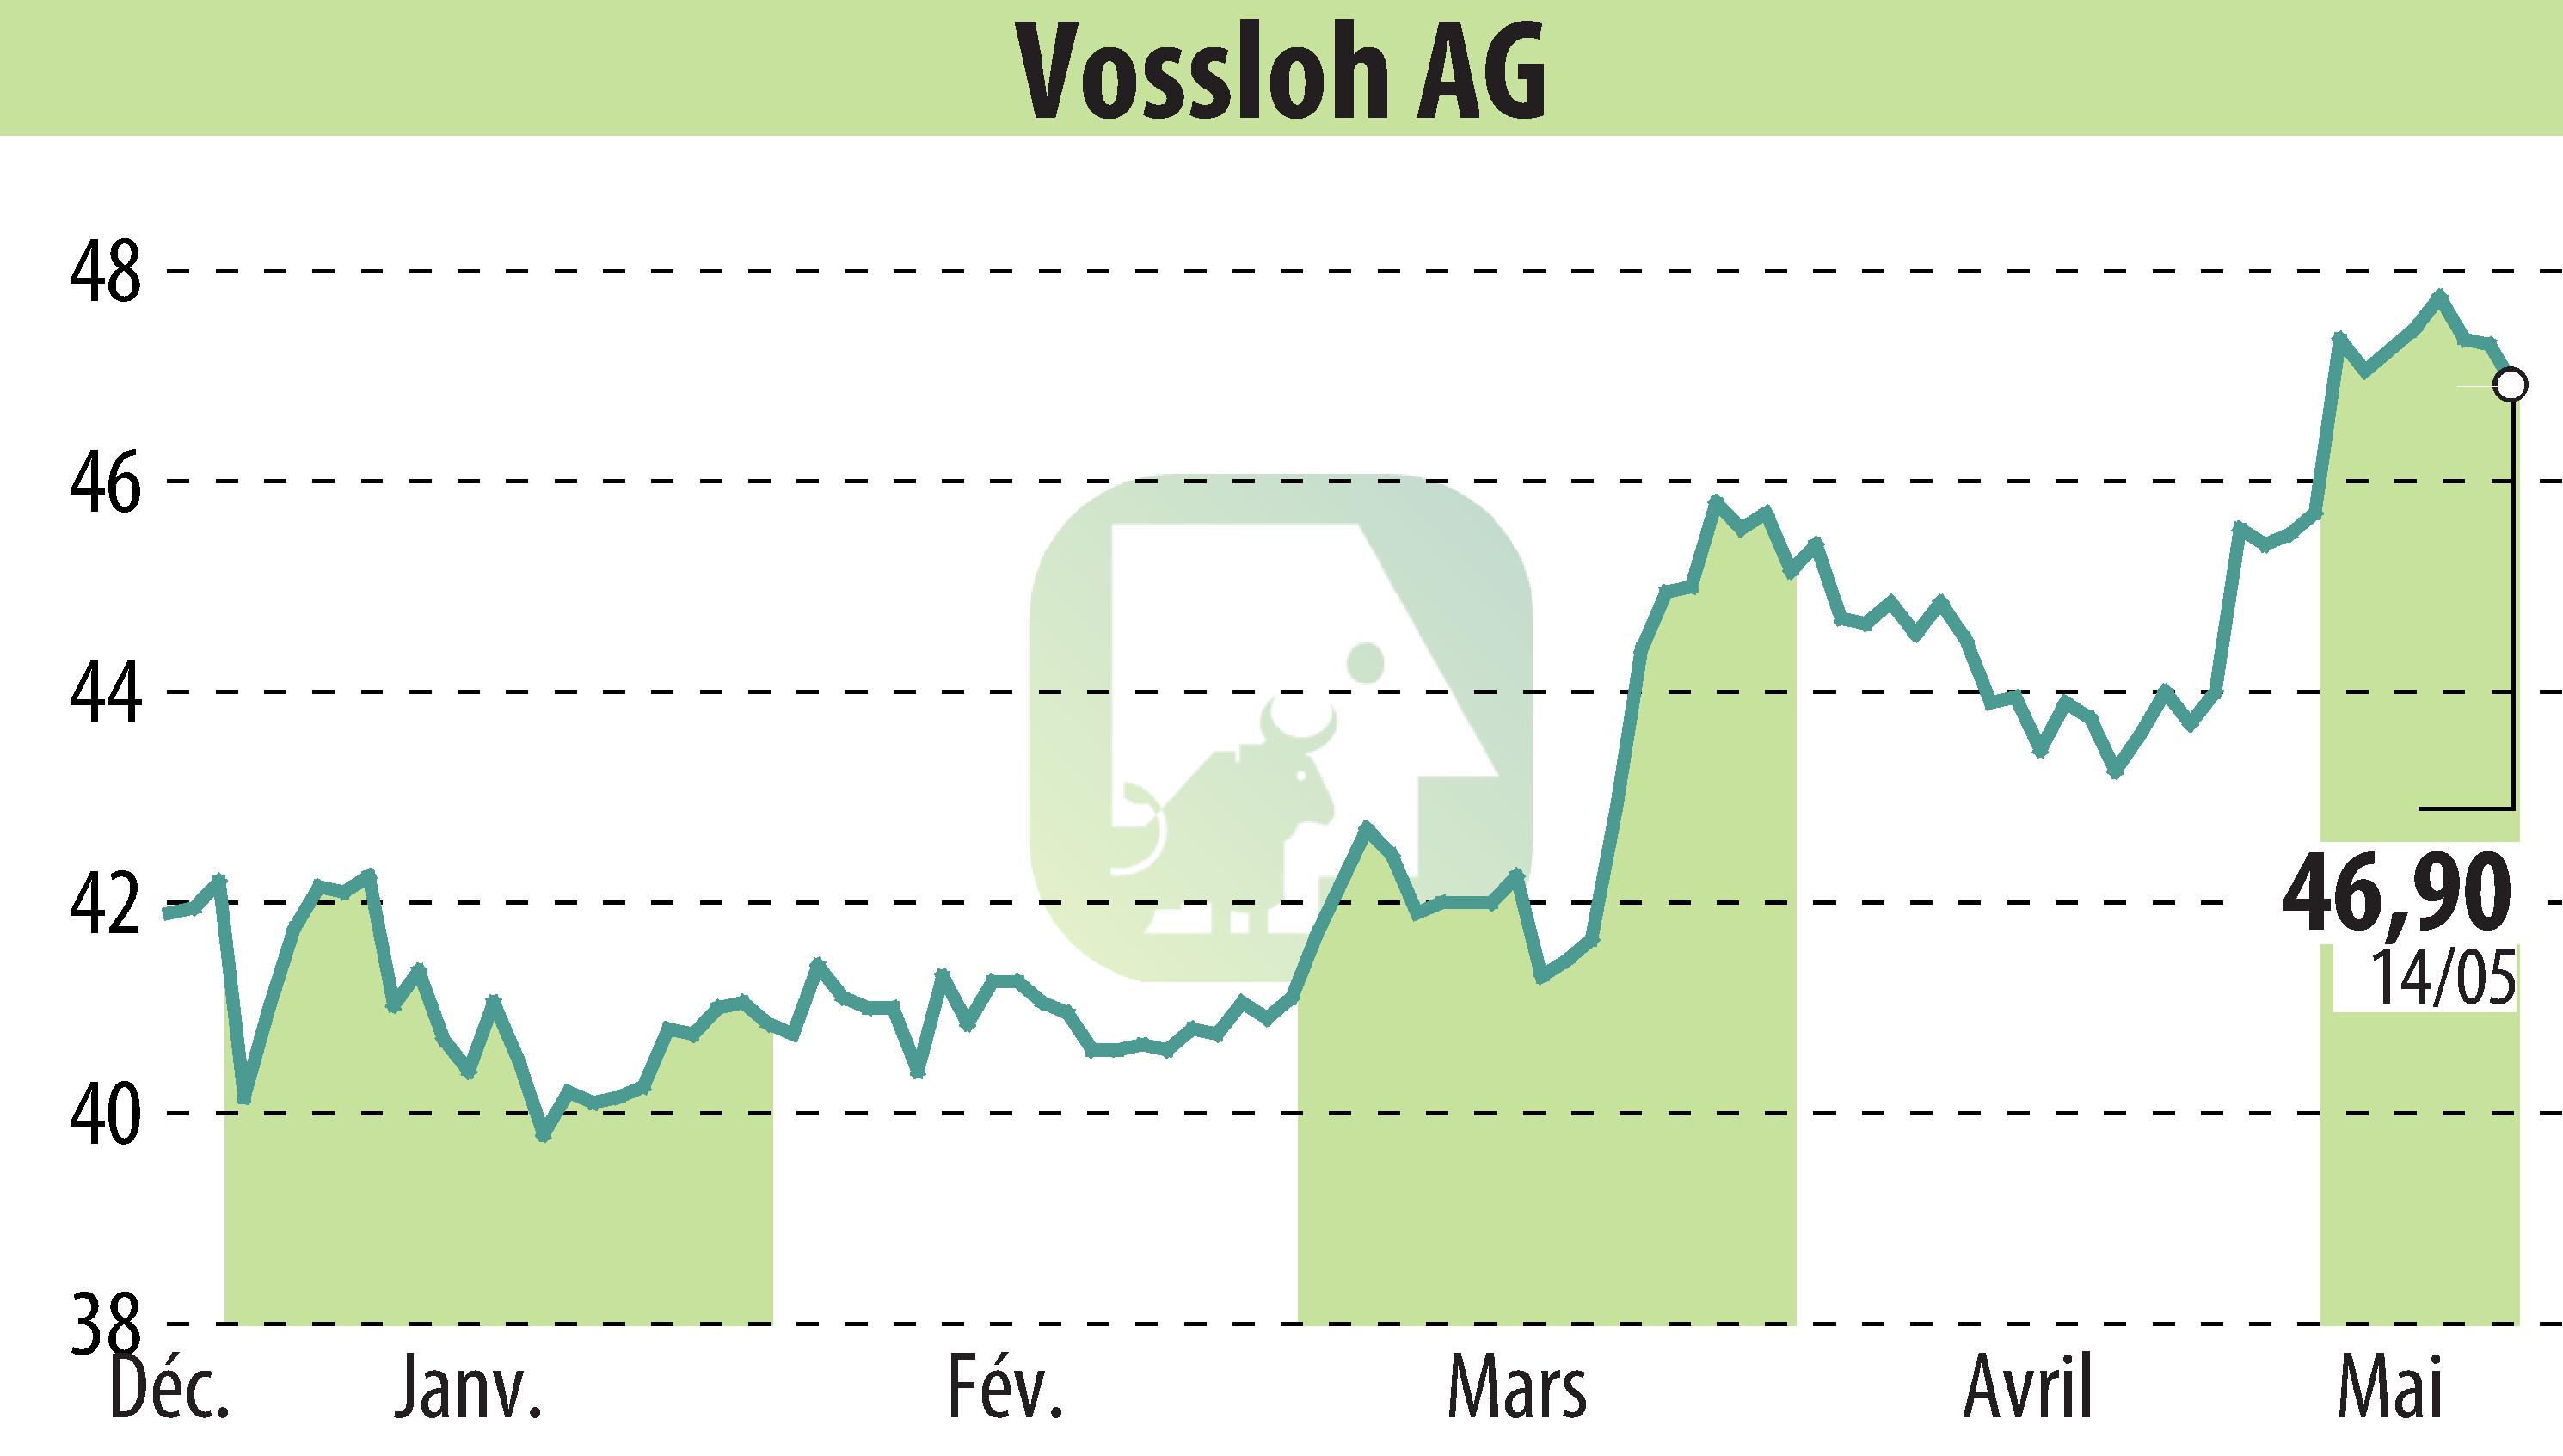 Graphique de l'évolution du cours de l'action Vossloh AG (EBR:VOS).